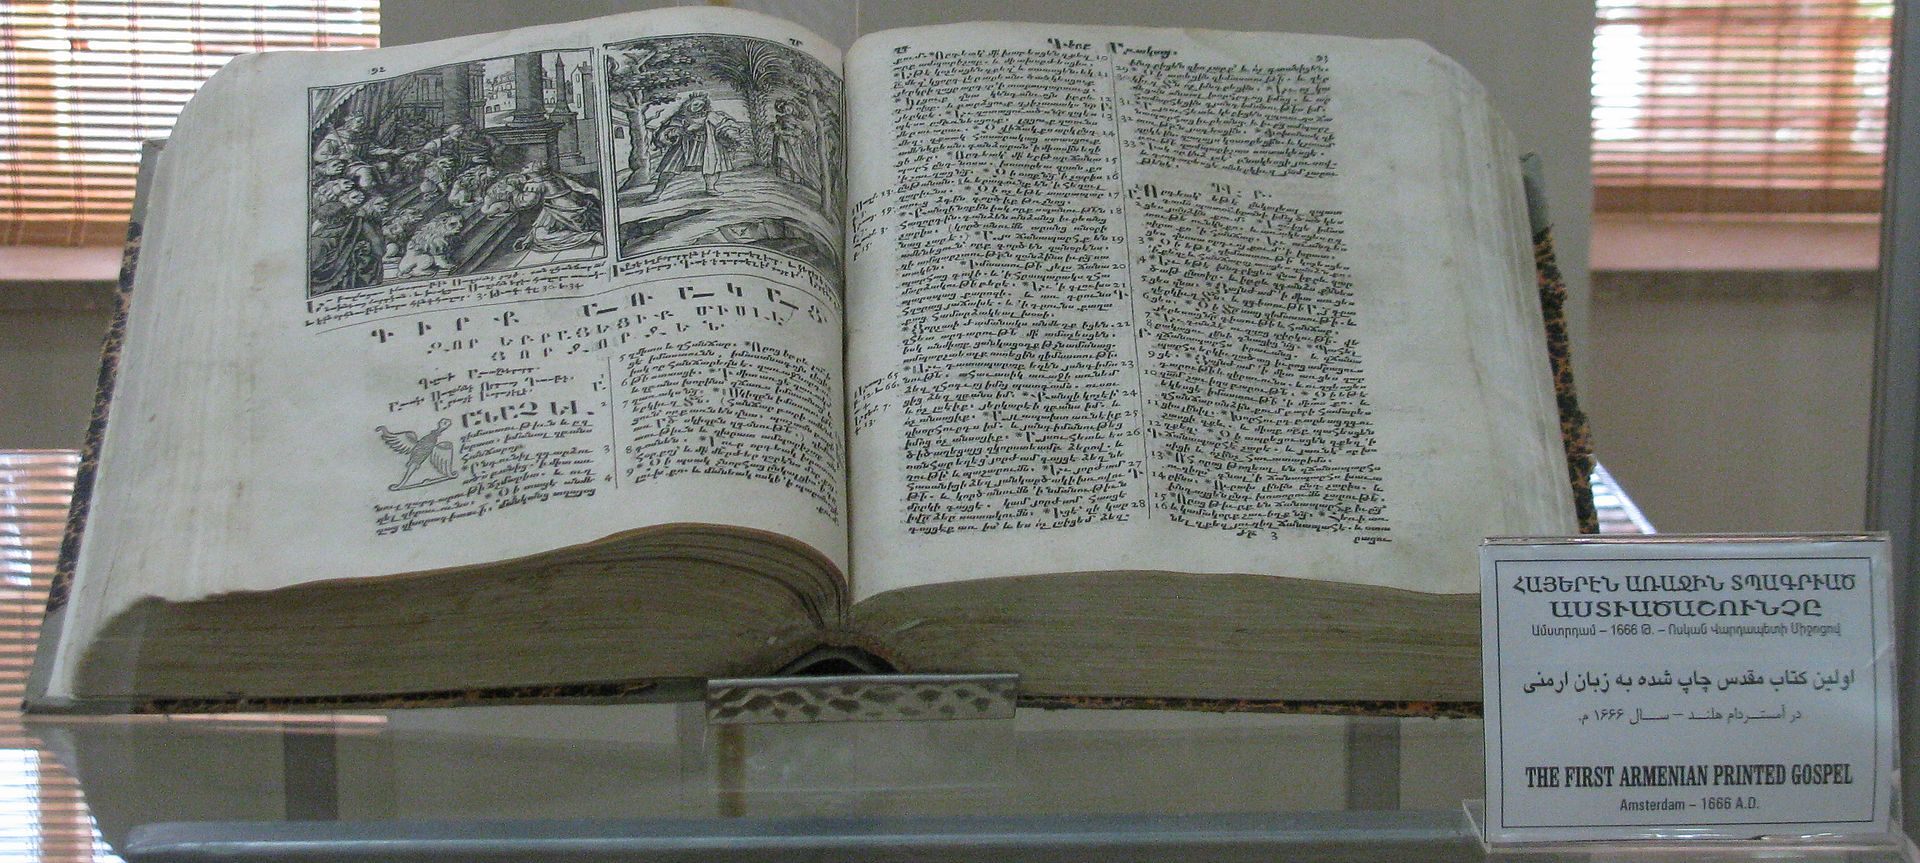 اولین کتاب ارمنی نخستین کتاب مقدس چاپ شده ارمنی در موزه وانک